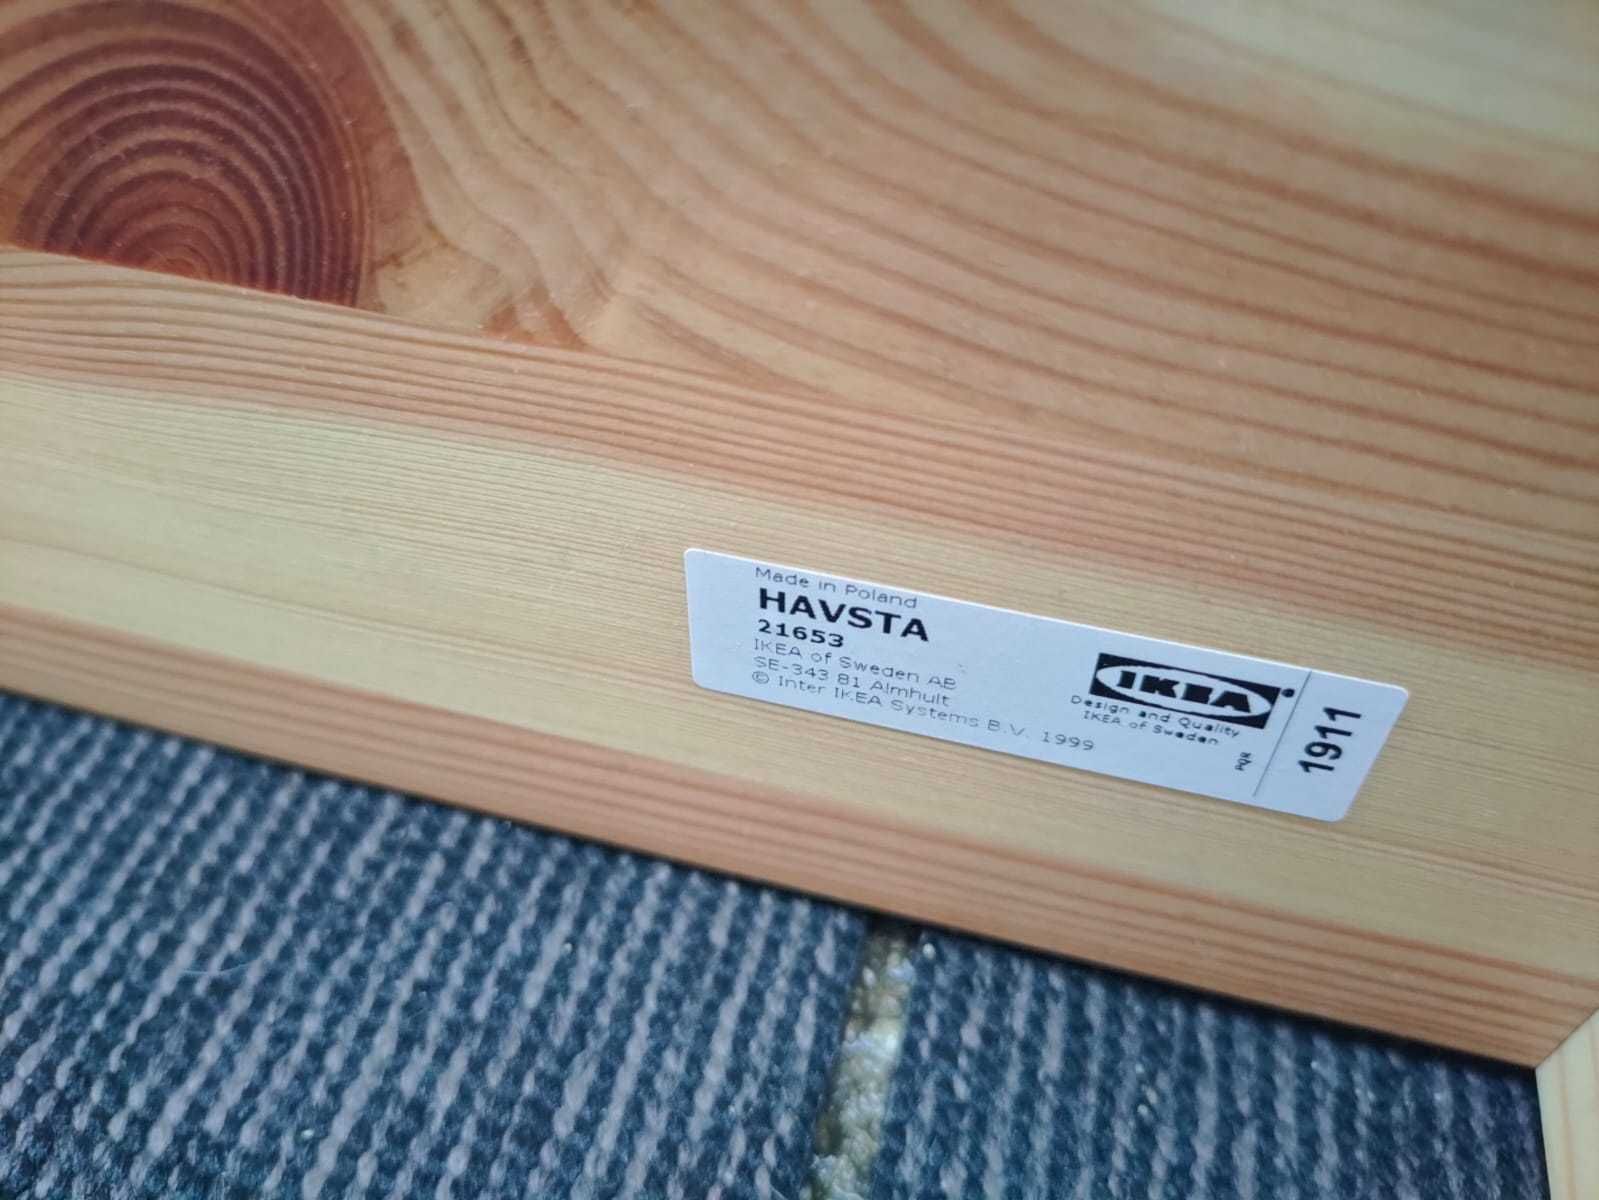 Szafka IKEA Havsta witryna z cokołem biała drewniana